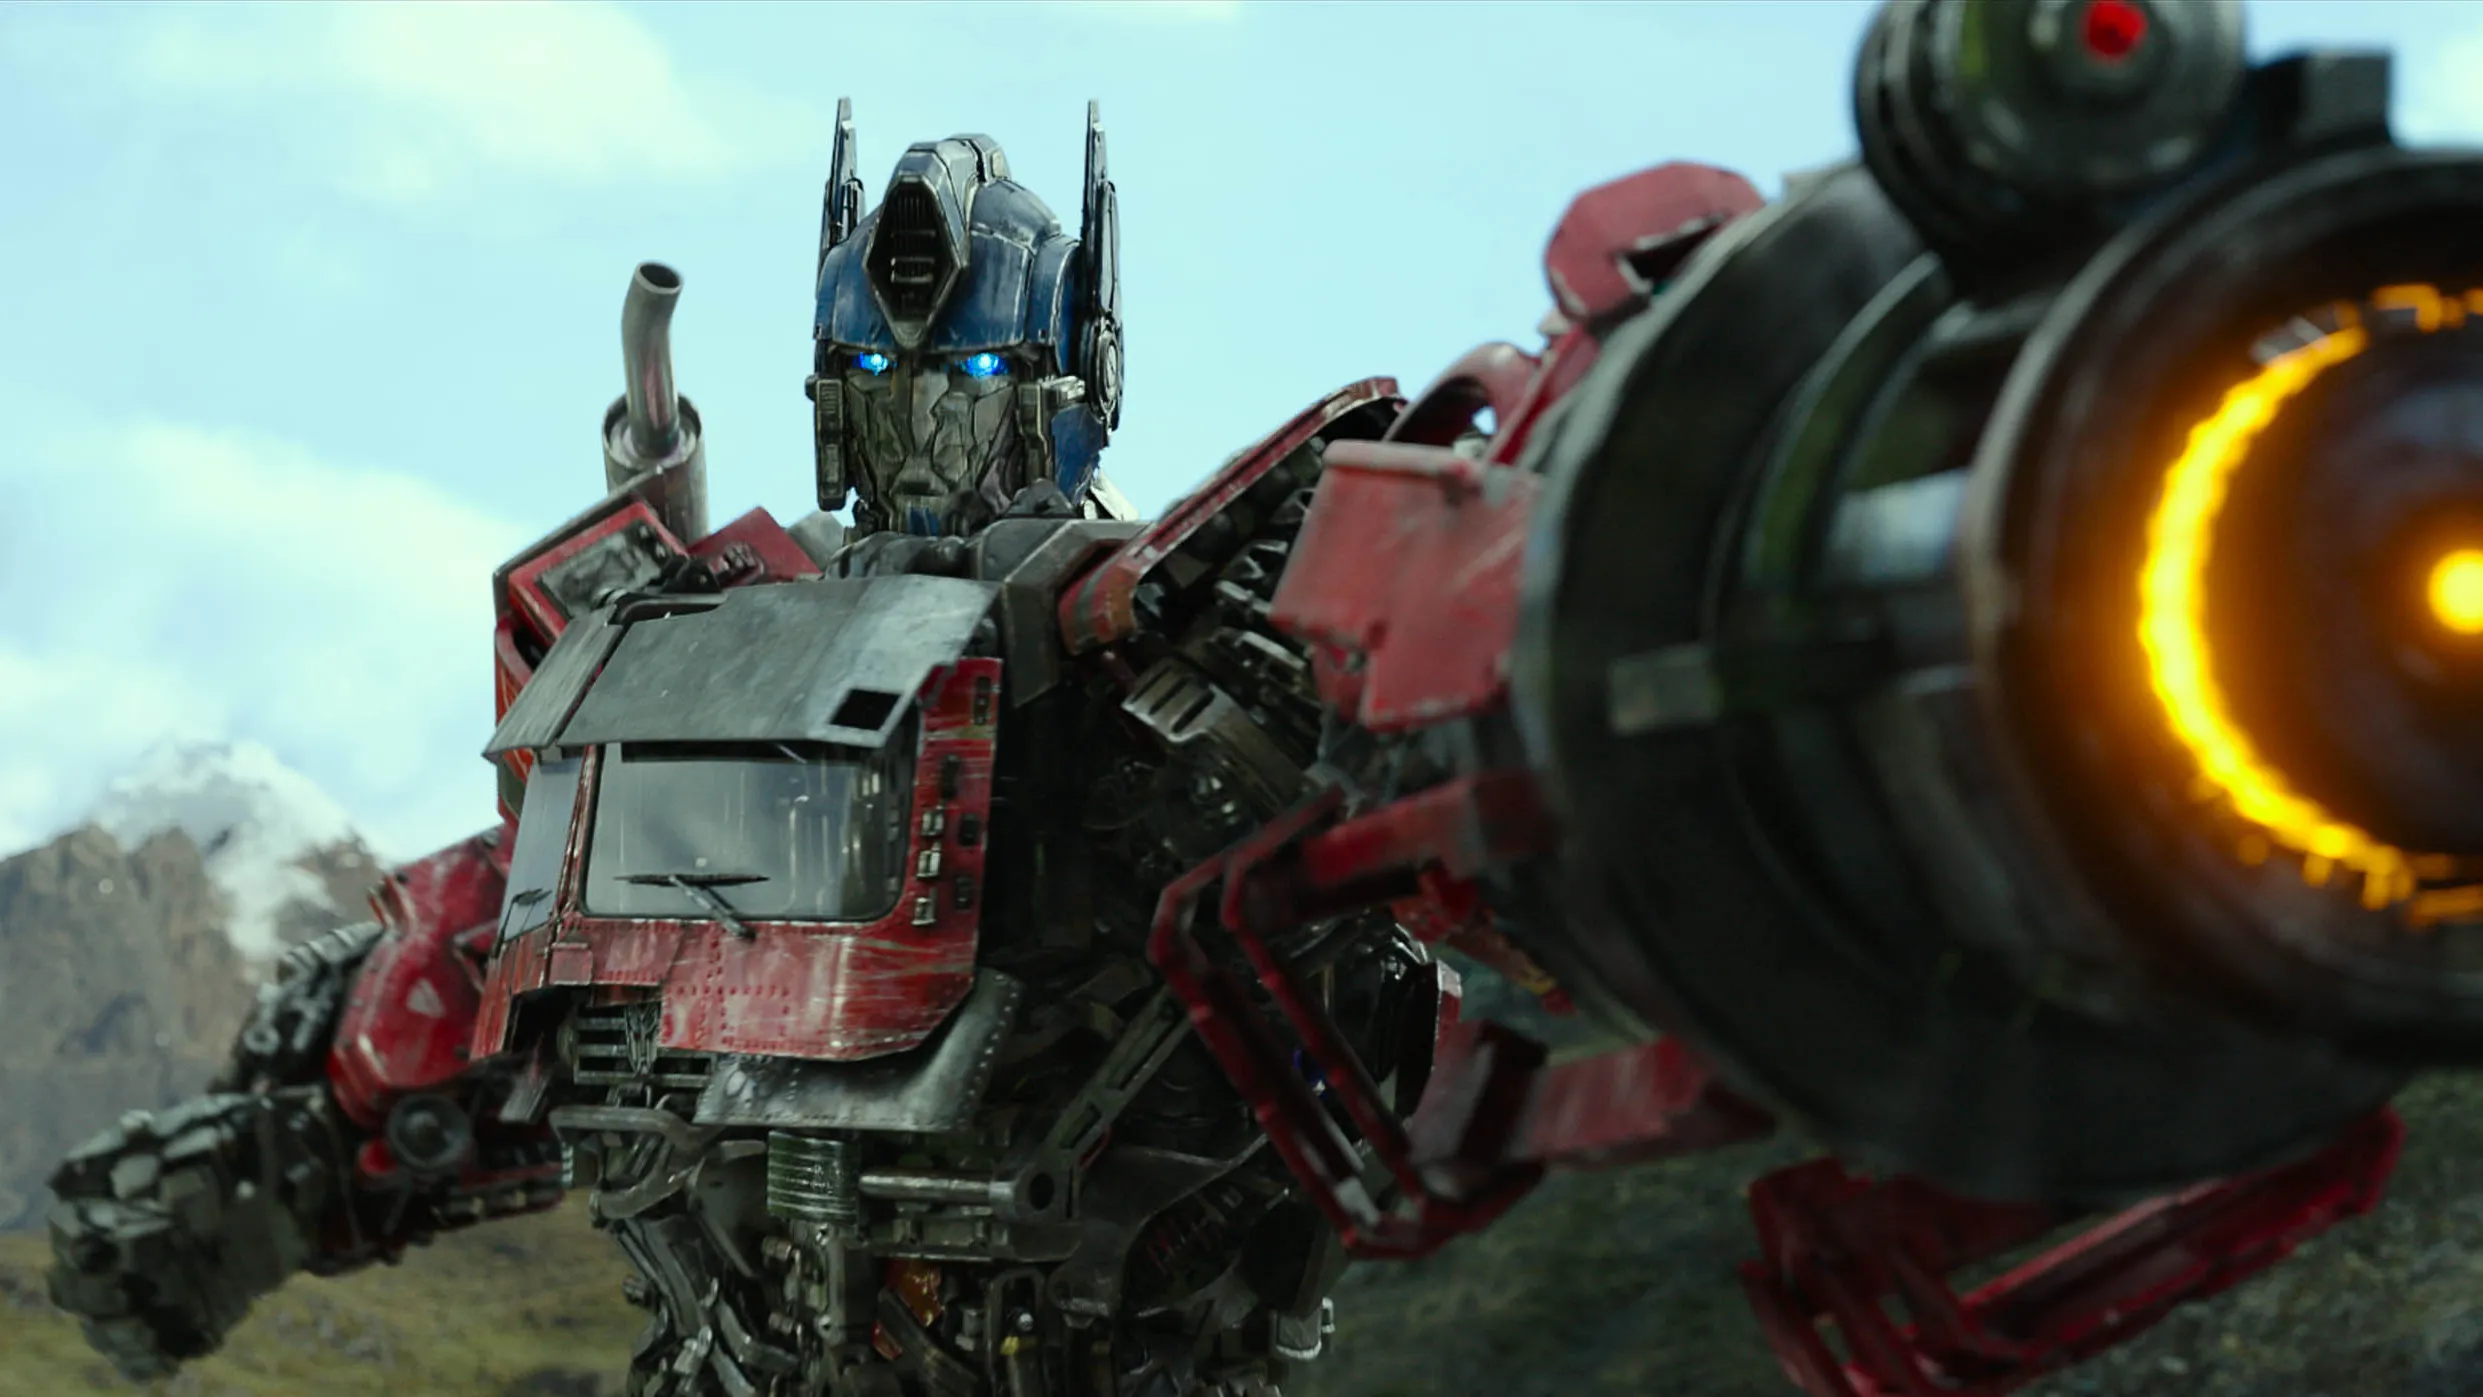 Optimus Prime - od dekad lider Autobotów. Czy można jeszcze zrobić z tą postacią coś ciekawego?